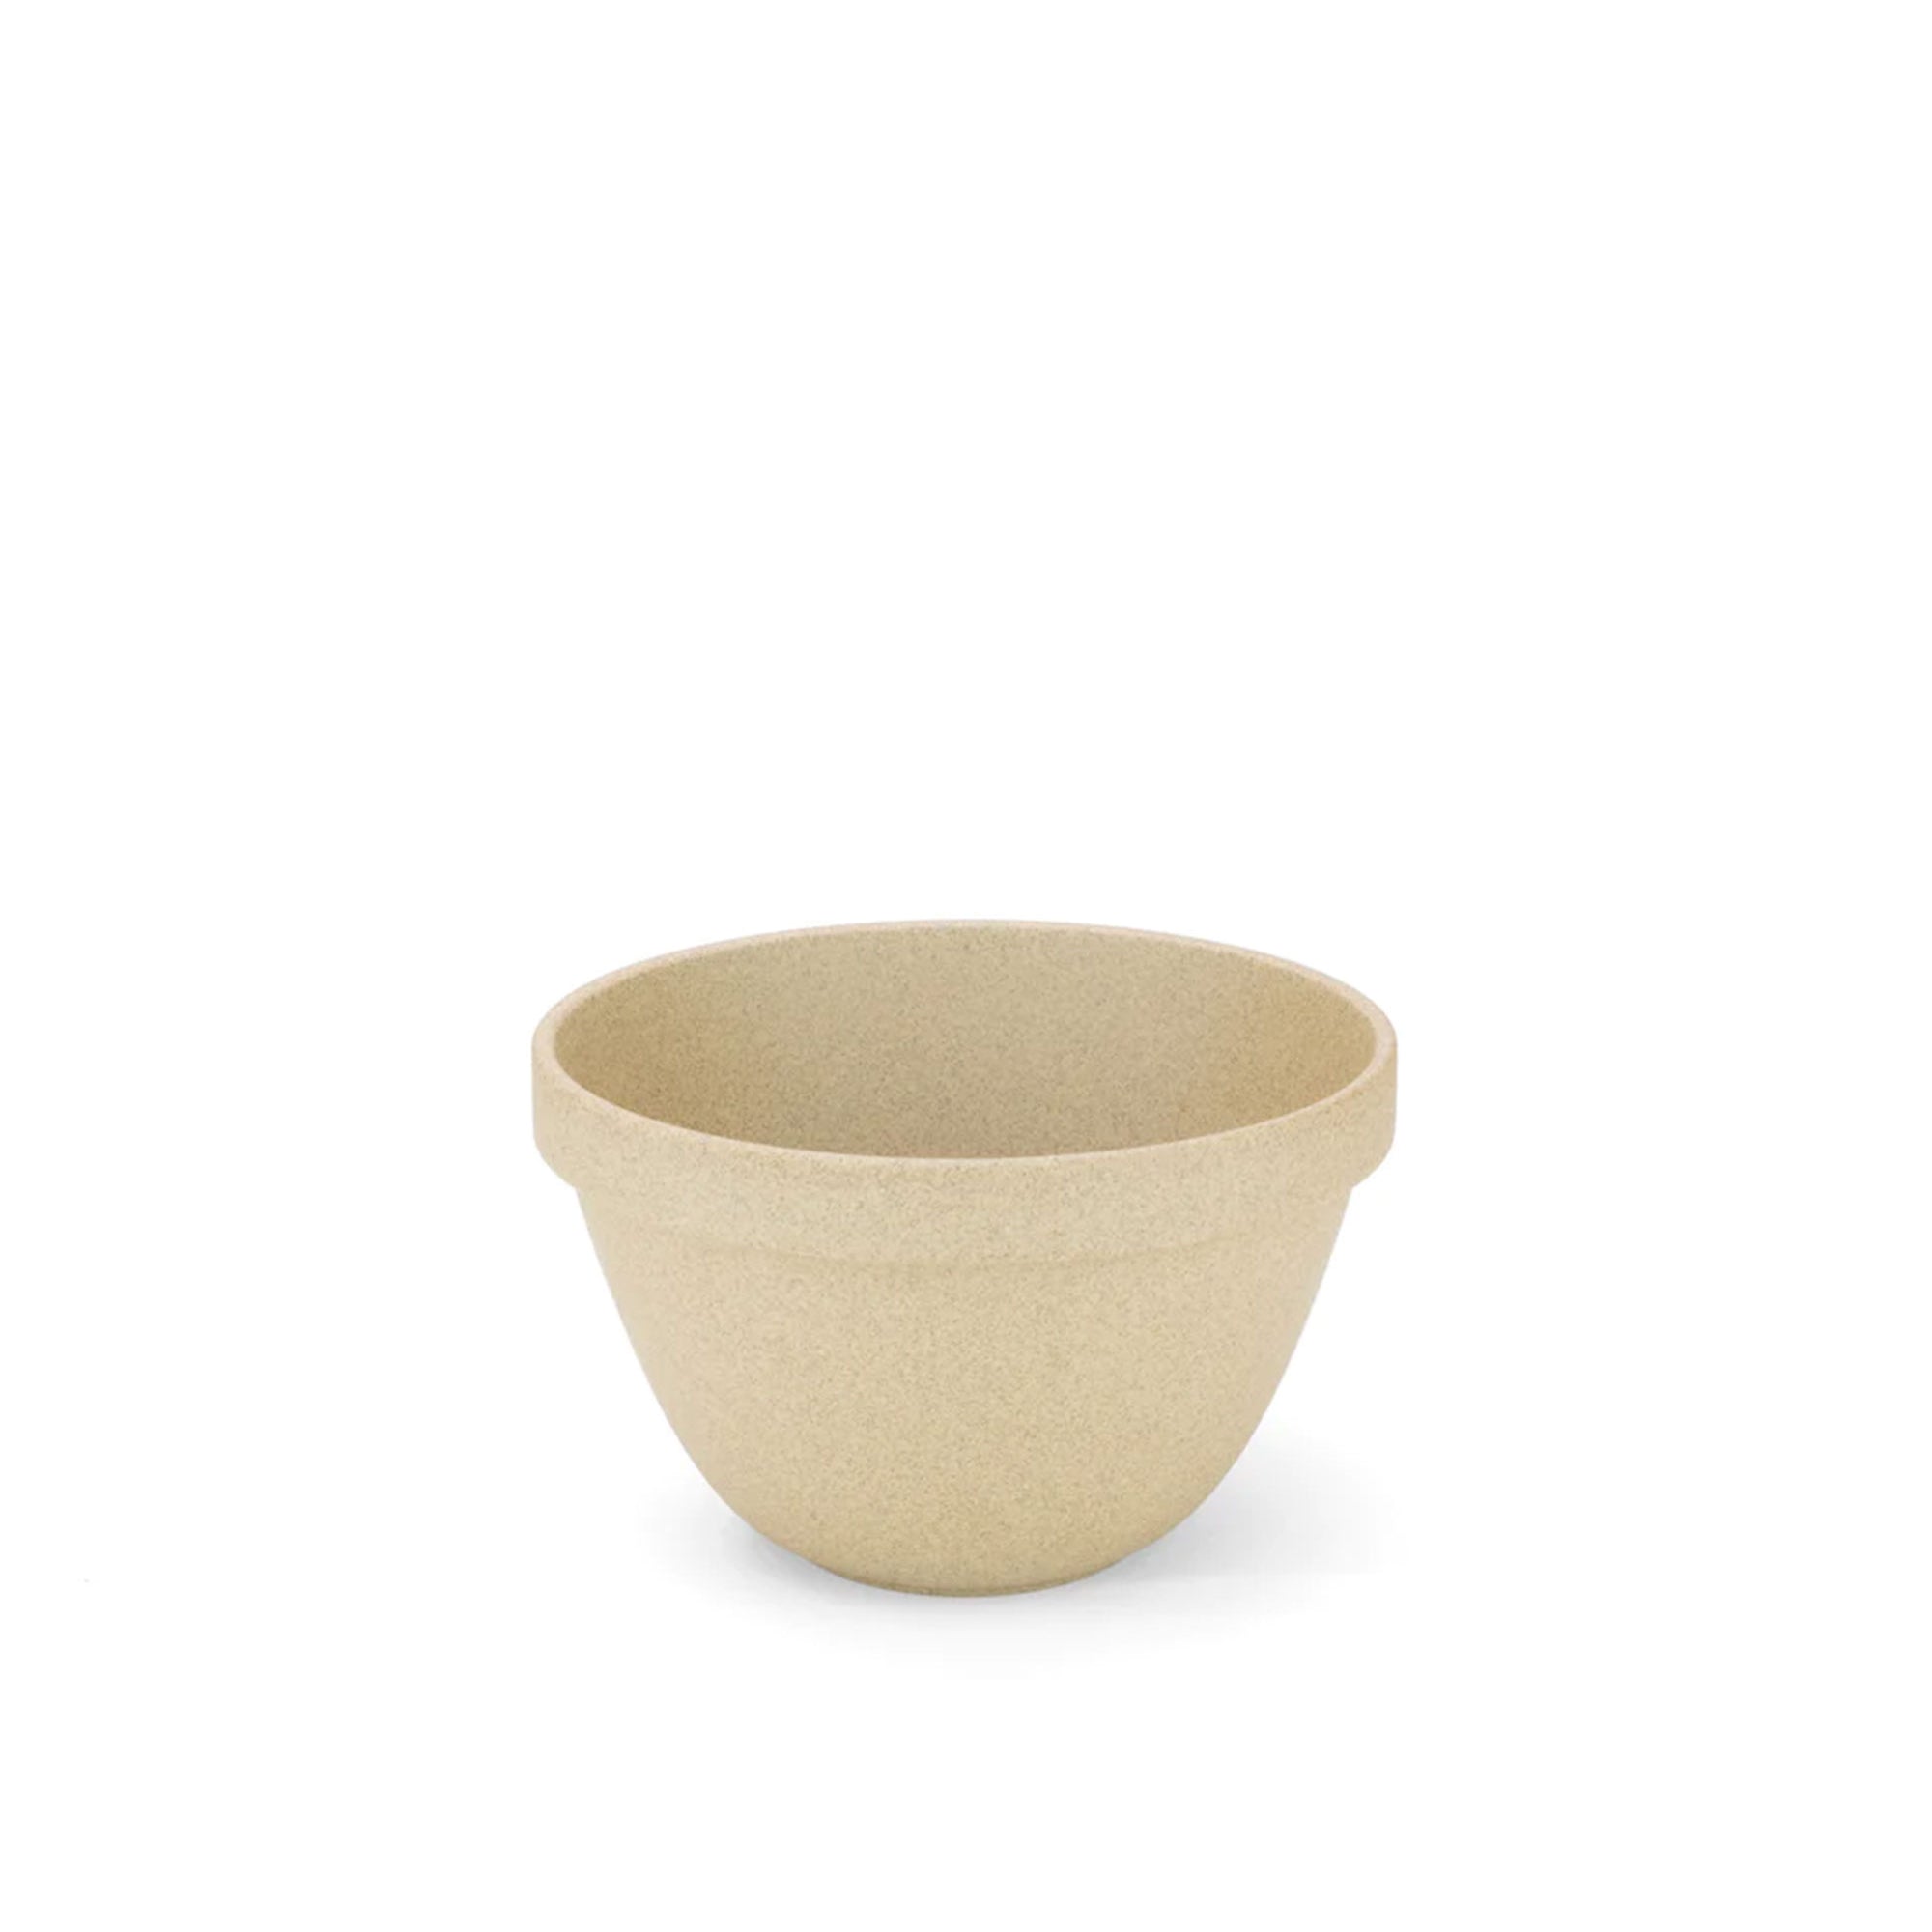 Natural Porcelain Ceramic Deep Bowl